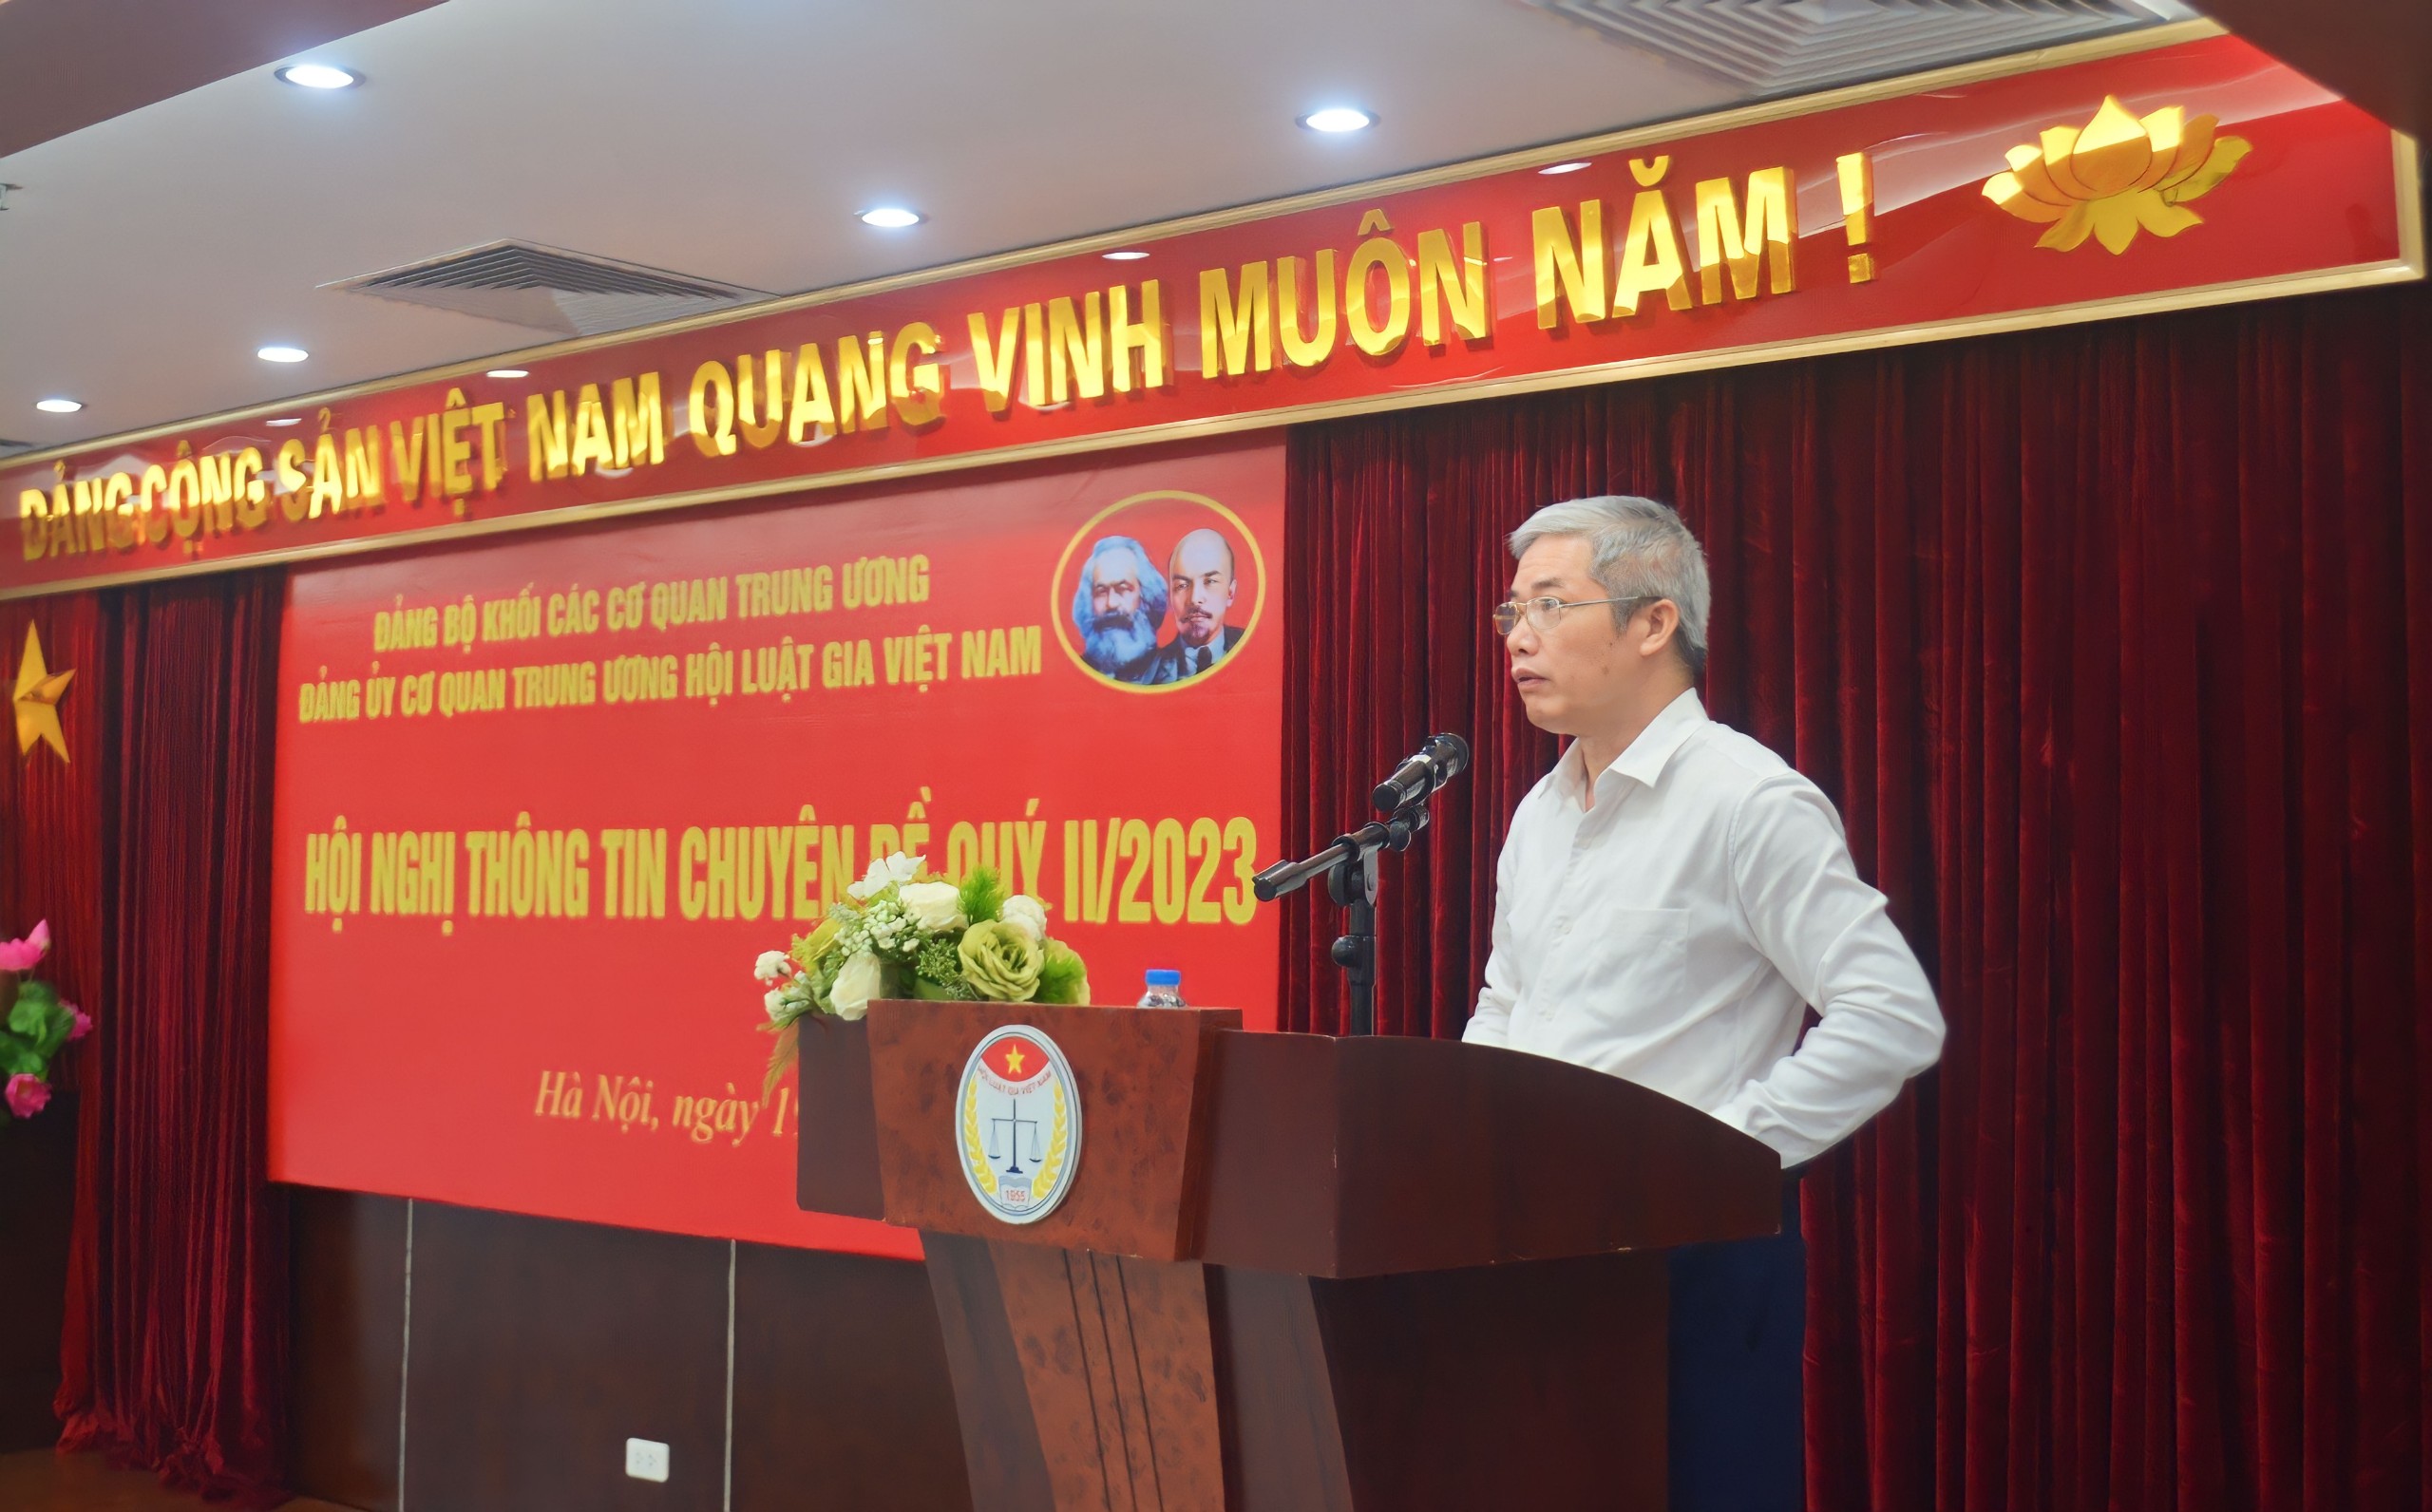 Tiêu điểm - Hội Luật gia Việt Nam tổ chức Hội nghị thông tin chuyên đề Quý II năm 2023 (Hình 3).